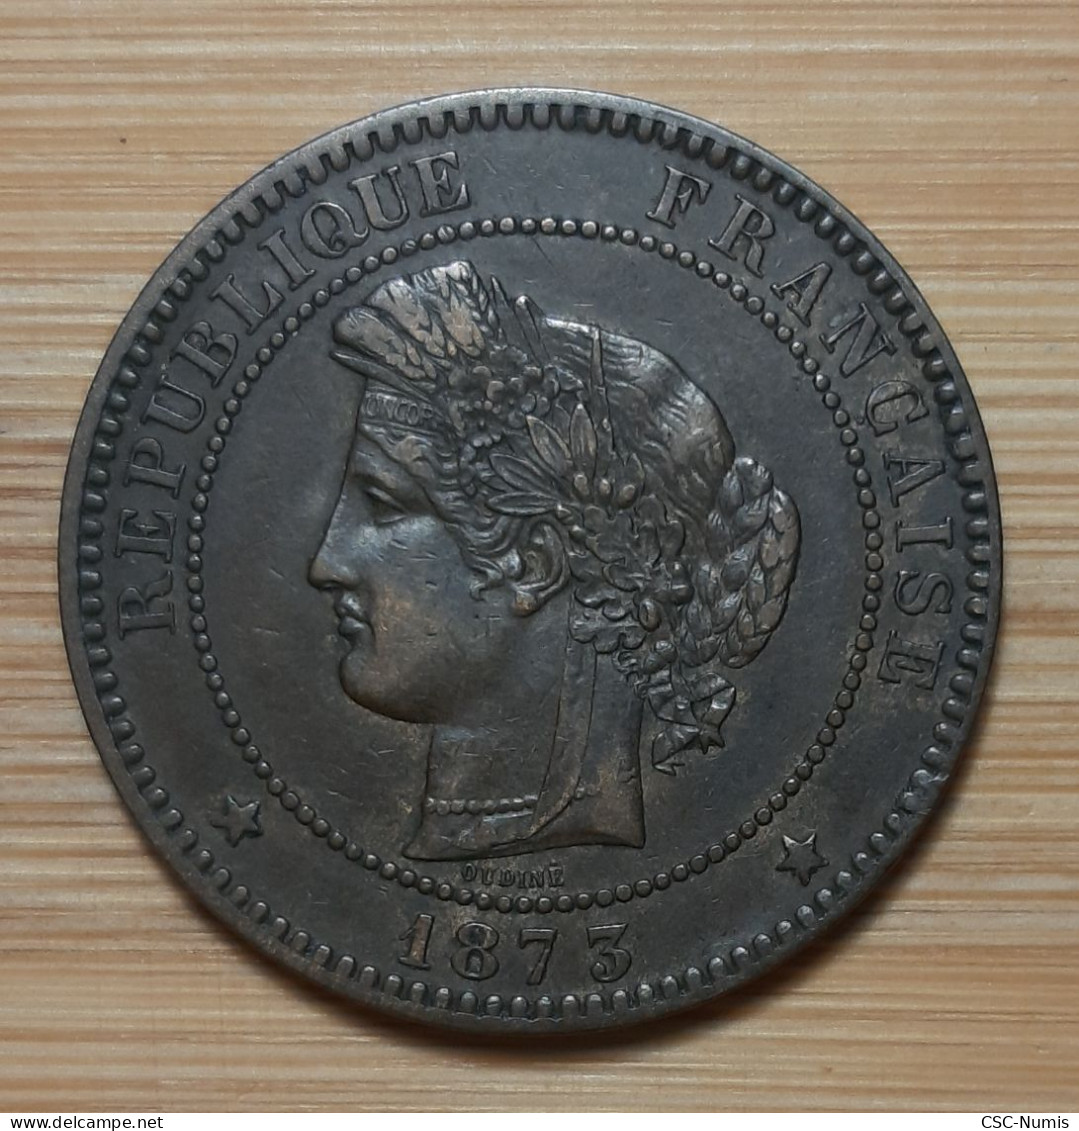 (N-0123) - IIIème République – 10 Centimes 1873 A, Paris - 10 Centimes